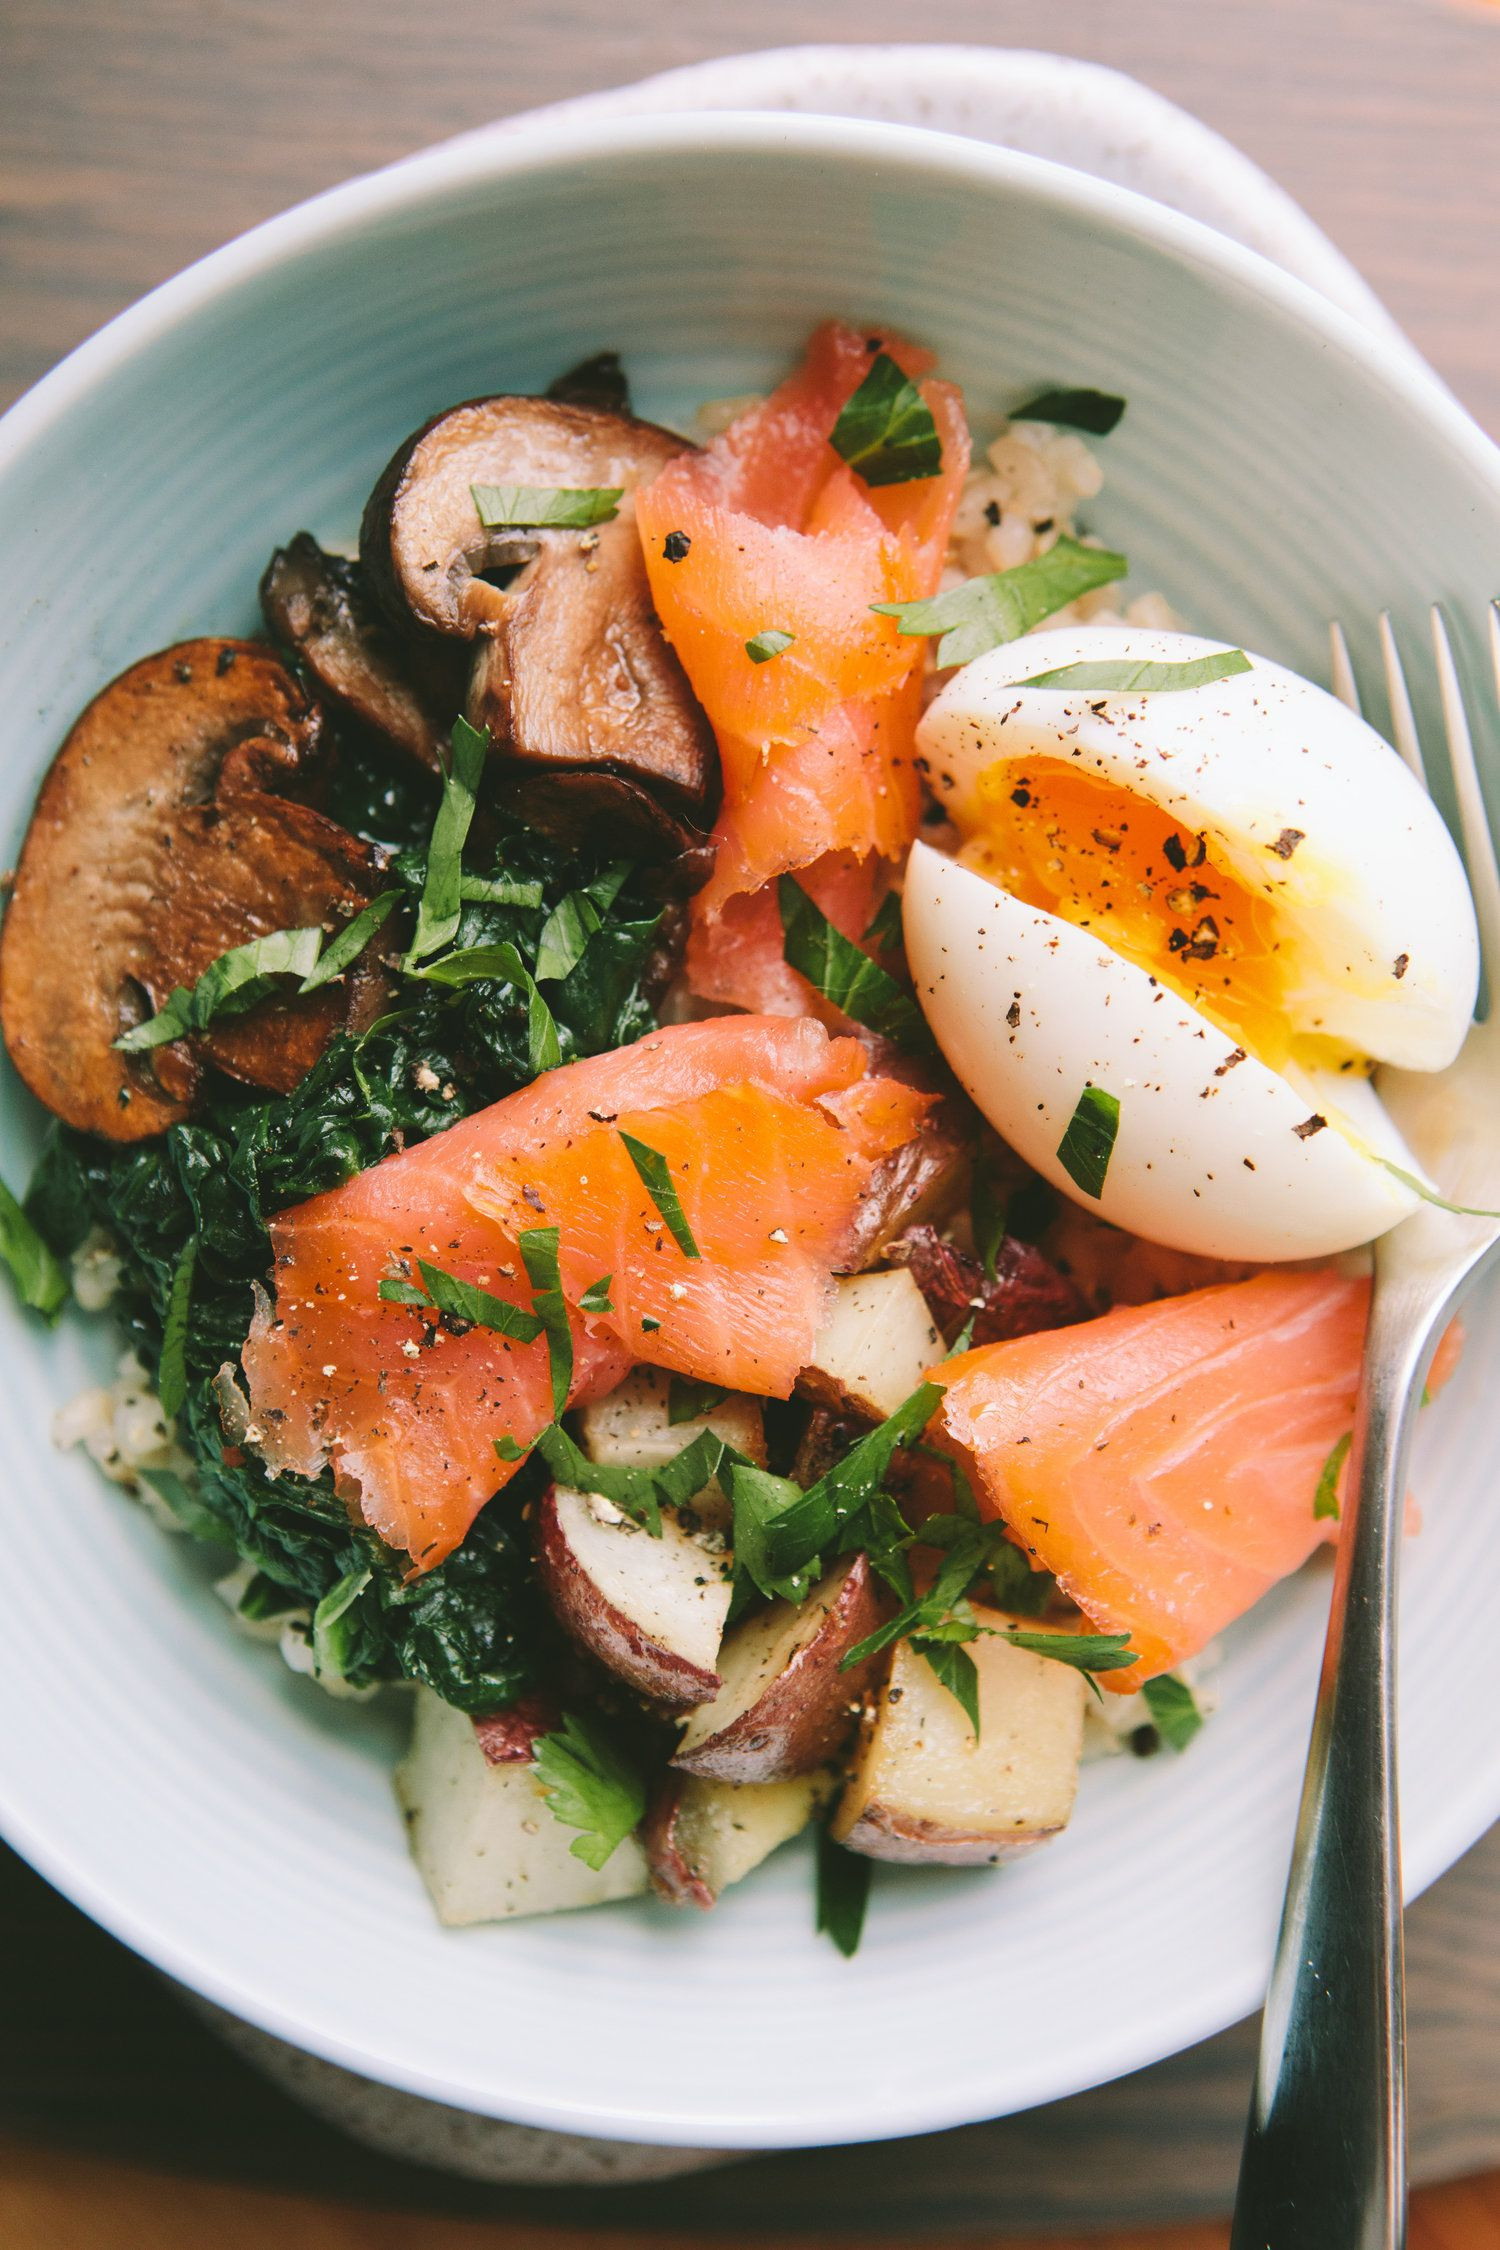 Healthy Smoked Salmon Recipes
 Best 25 Salmon breakfast ideas on Pinterest